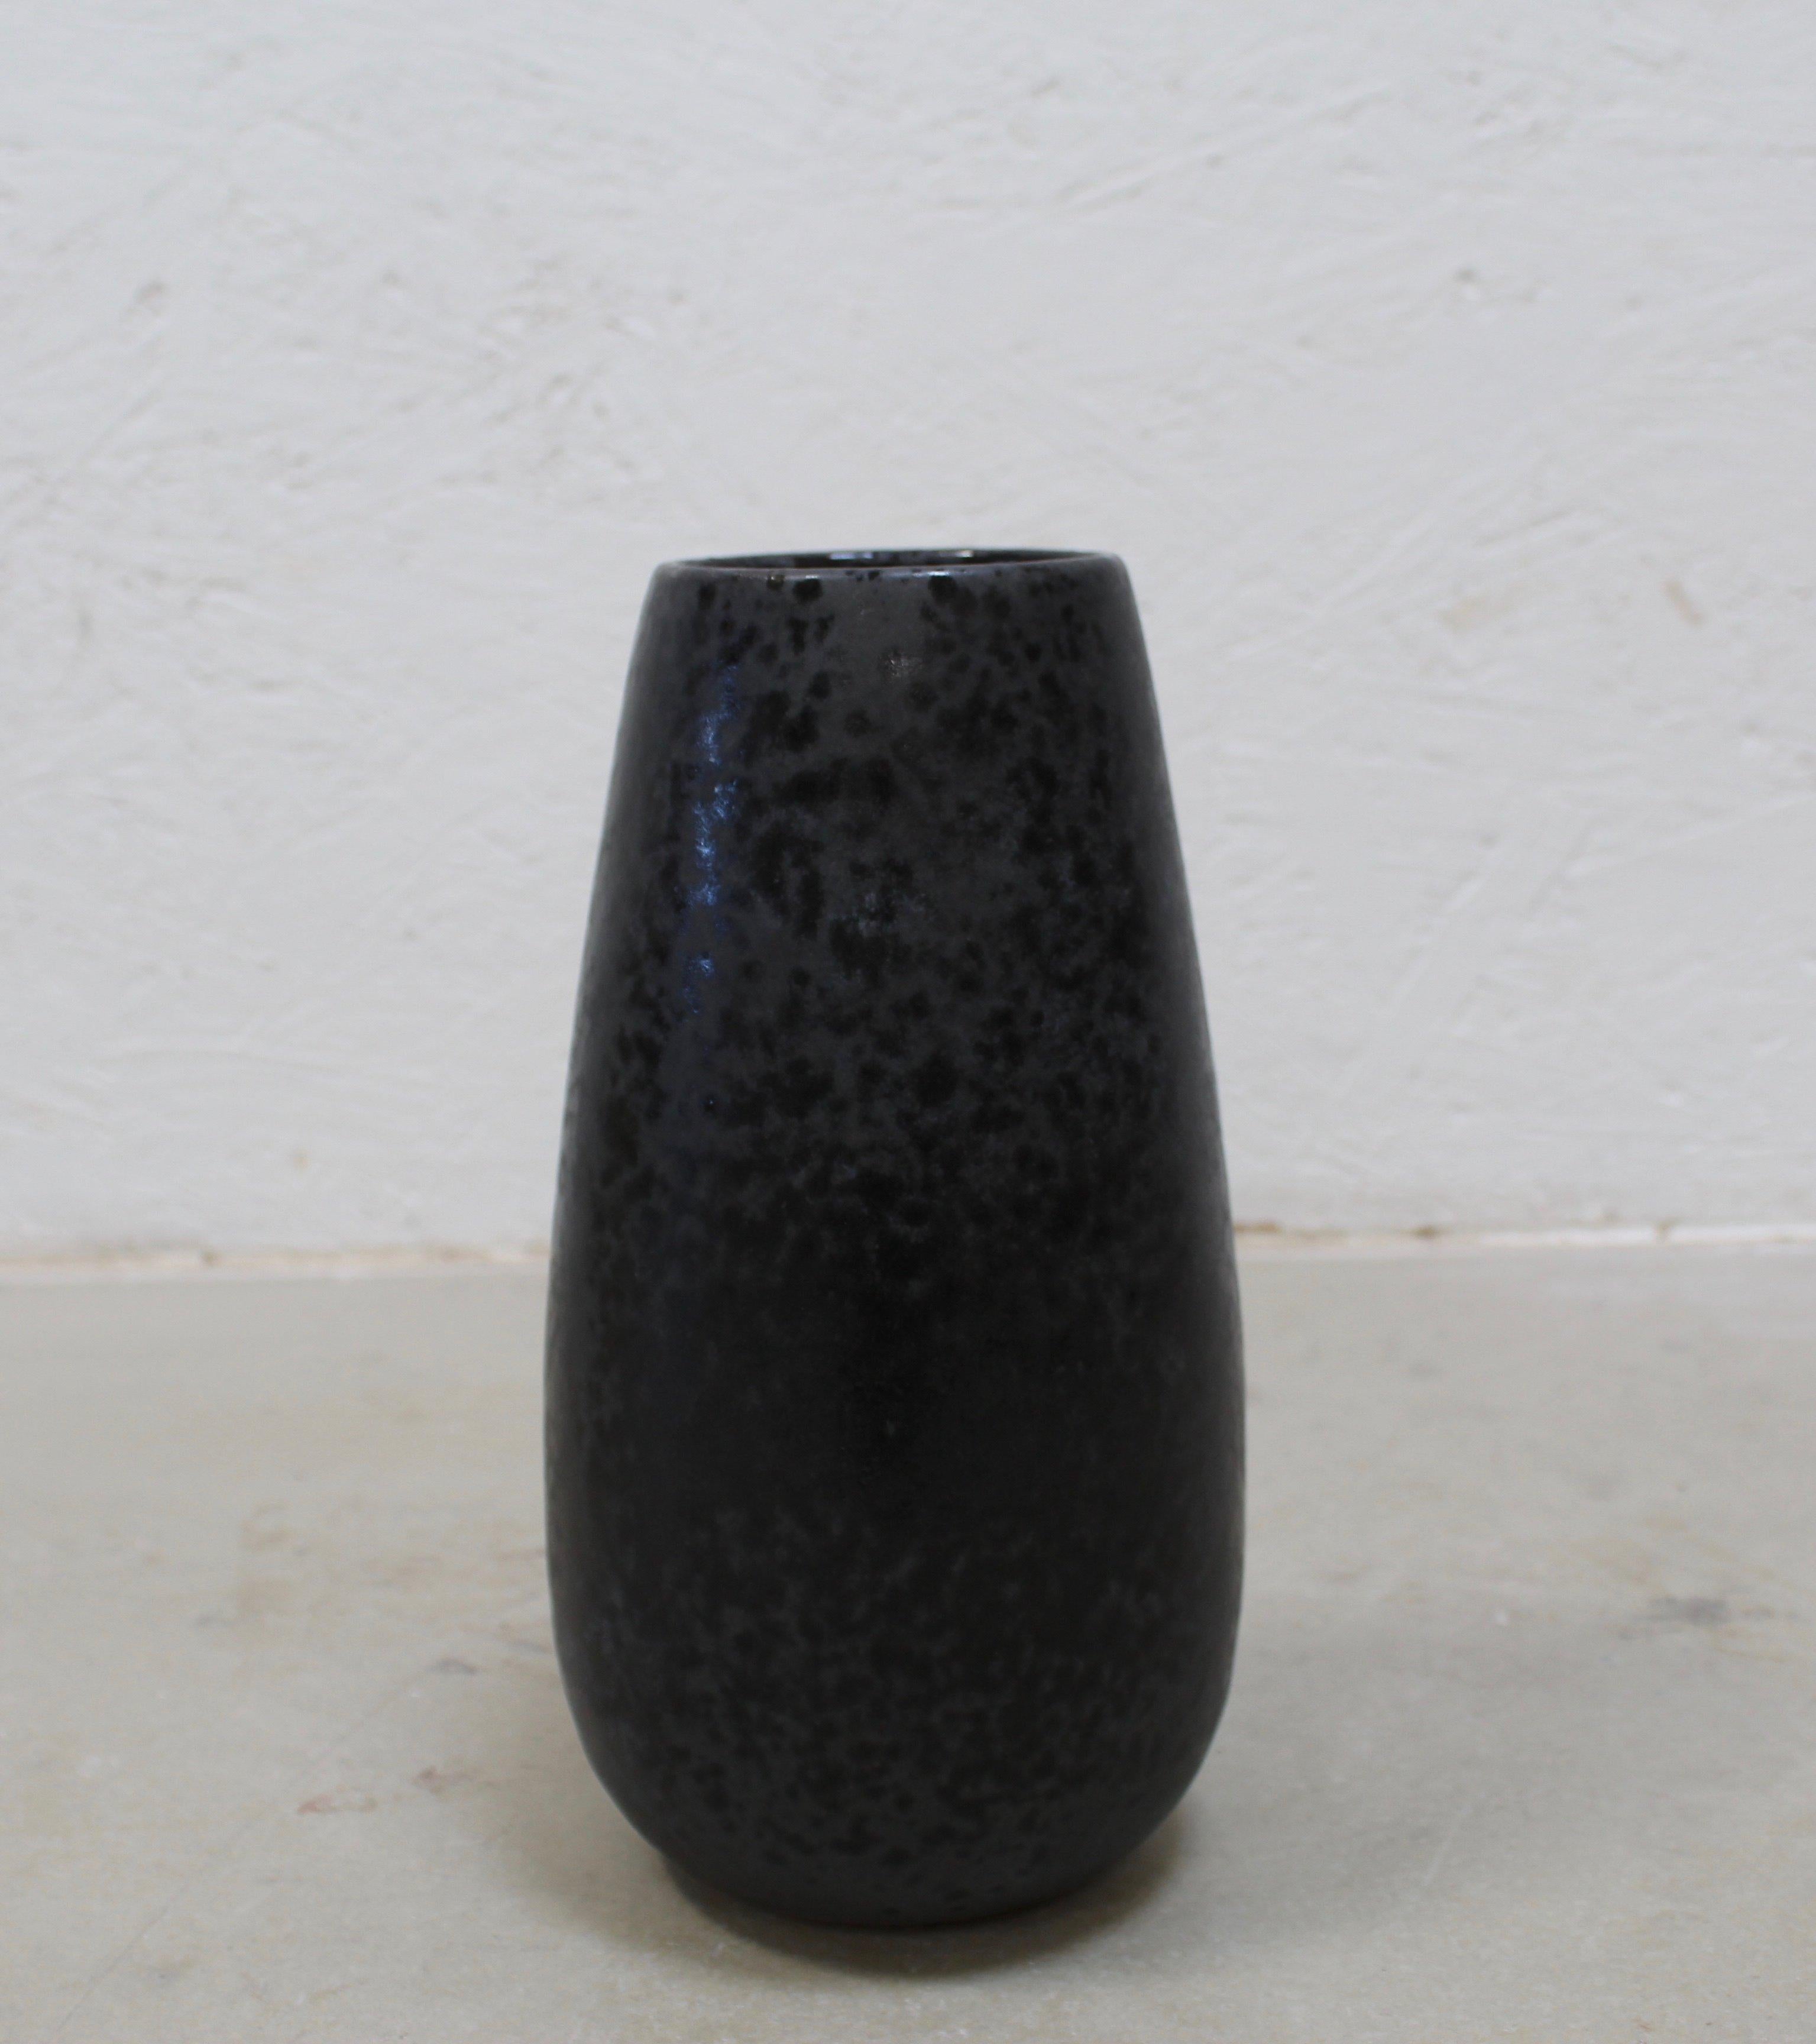 Ceramic KH Würtz Tapering Cone Vase in Black Glaze